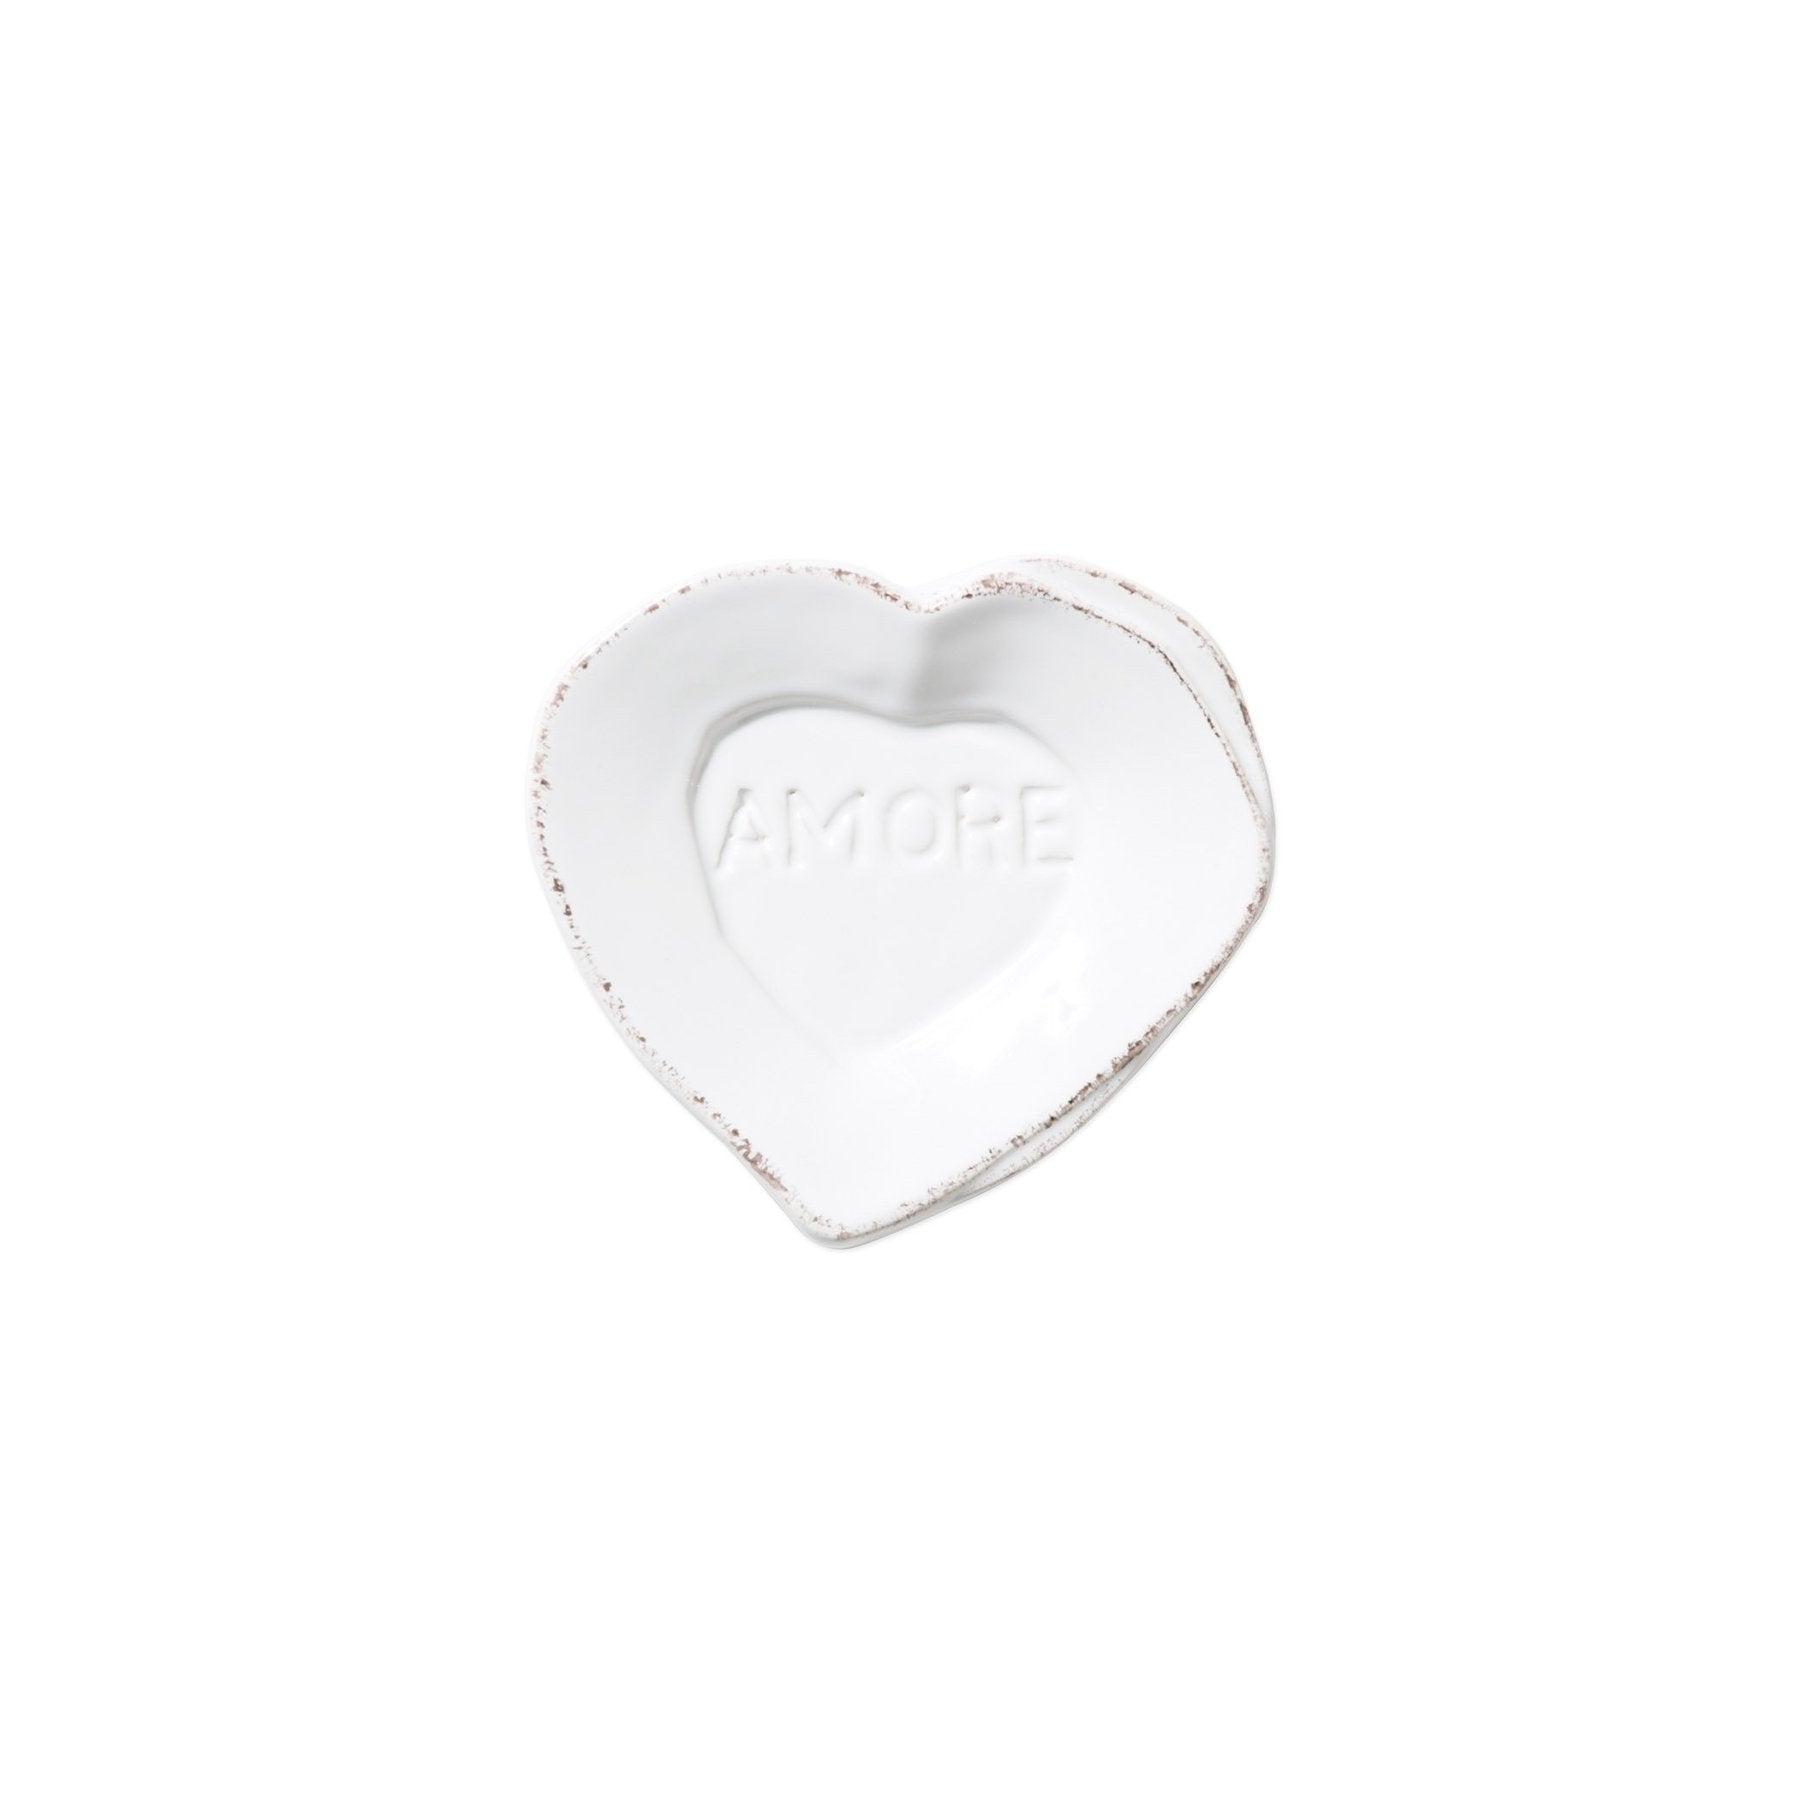 Lastra White Mini "Amore" Plate